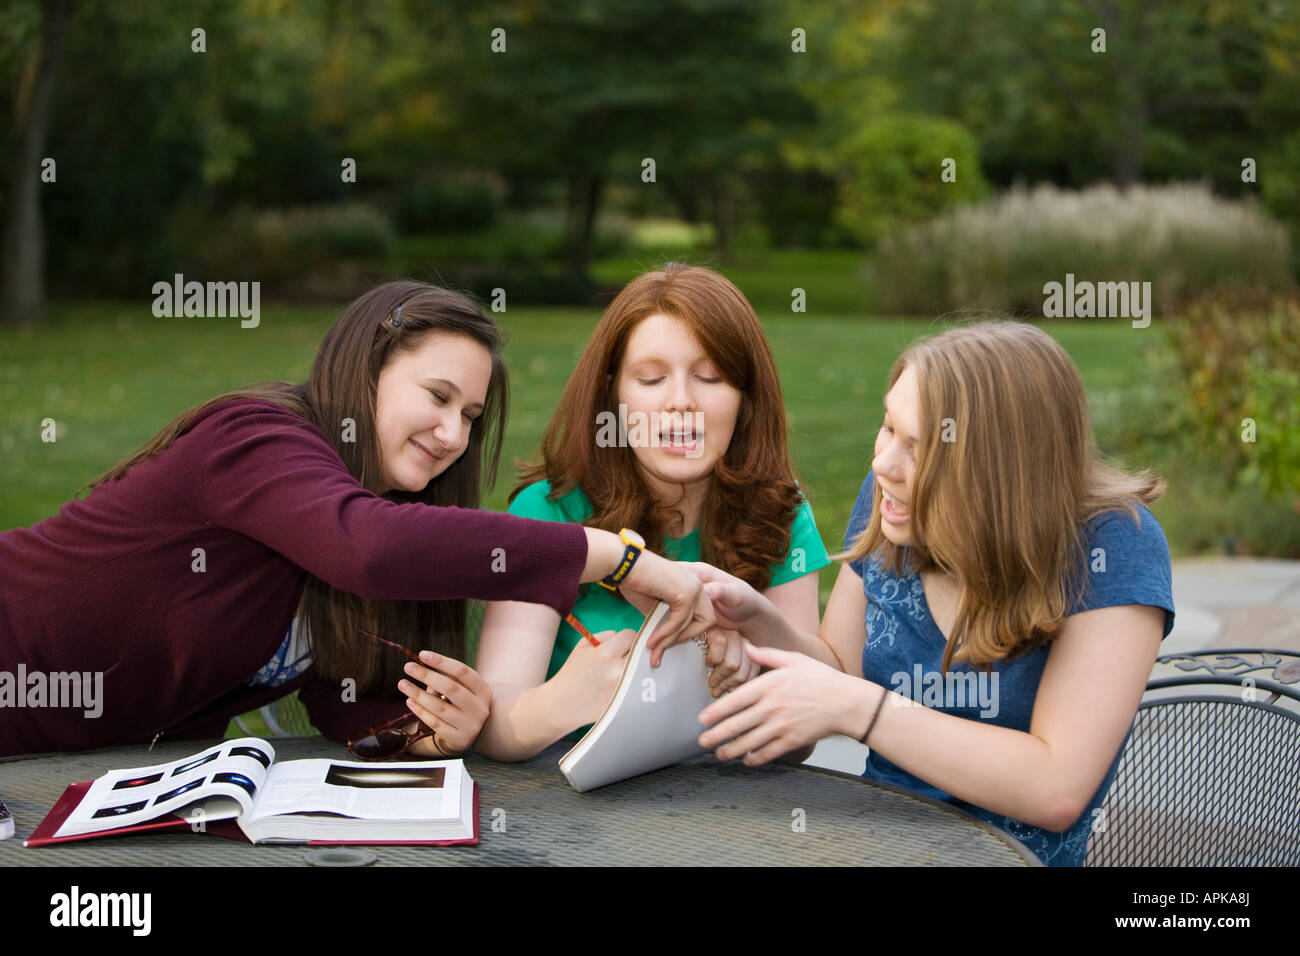 ILLINOIS Riverwoods drei Mädchen im Teenageralter goofing um anstatt zu studieren zusammen Lehrbuch öffnen auf Tabelle Stockfoto